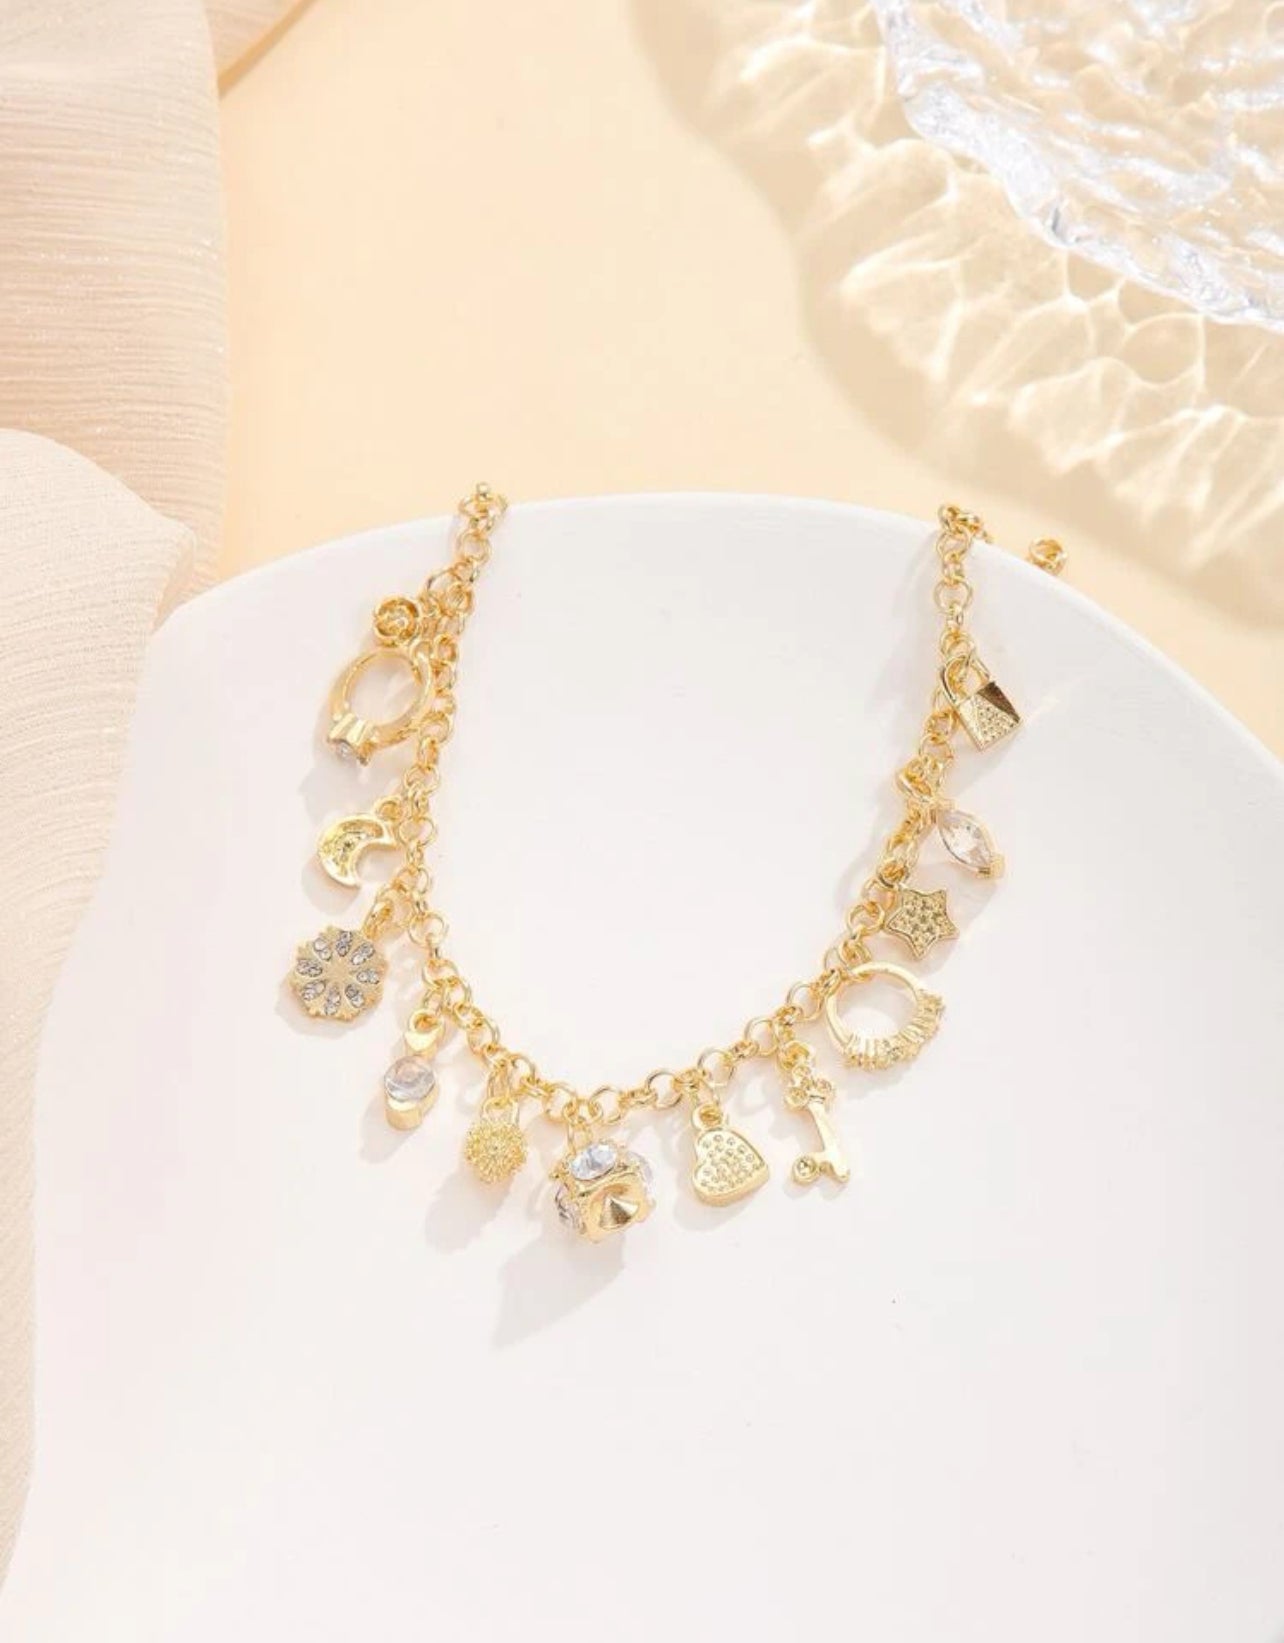 1pc Elegant Style Star Heart Key Pendant Bracelet Charm 18k Gold Plated Bracelet Chain